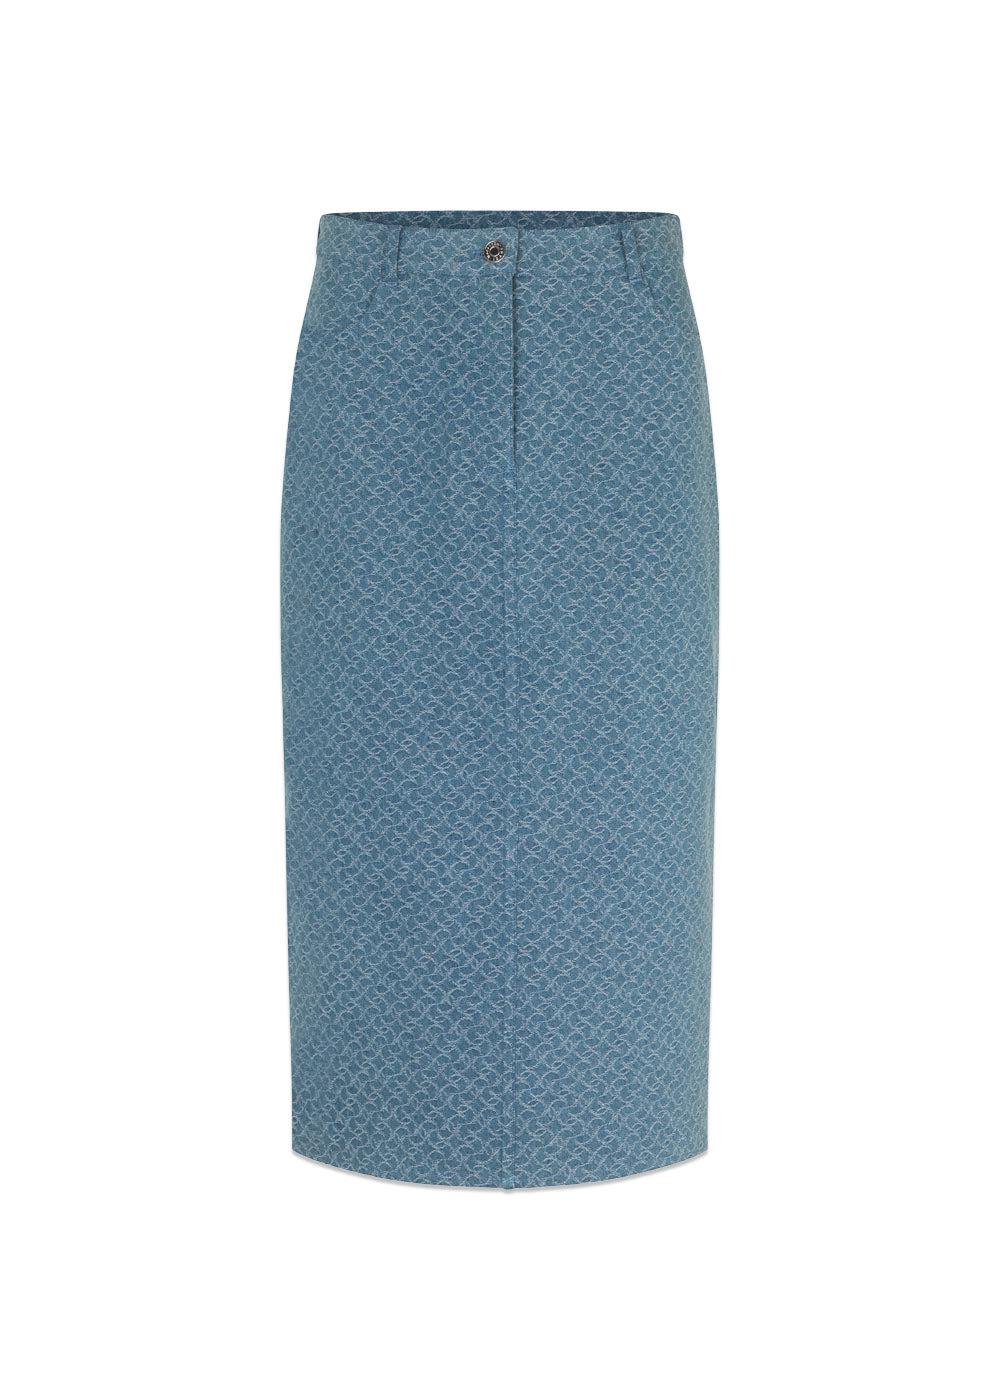 Modströms HennesyMD skirt - Structured Medium Blue. Køb skirts her.